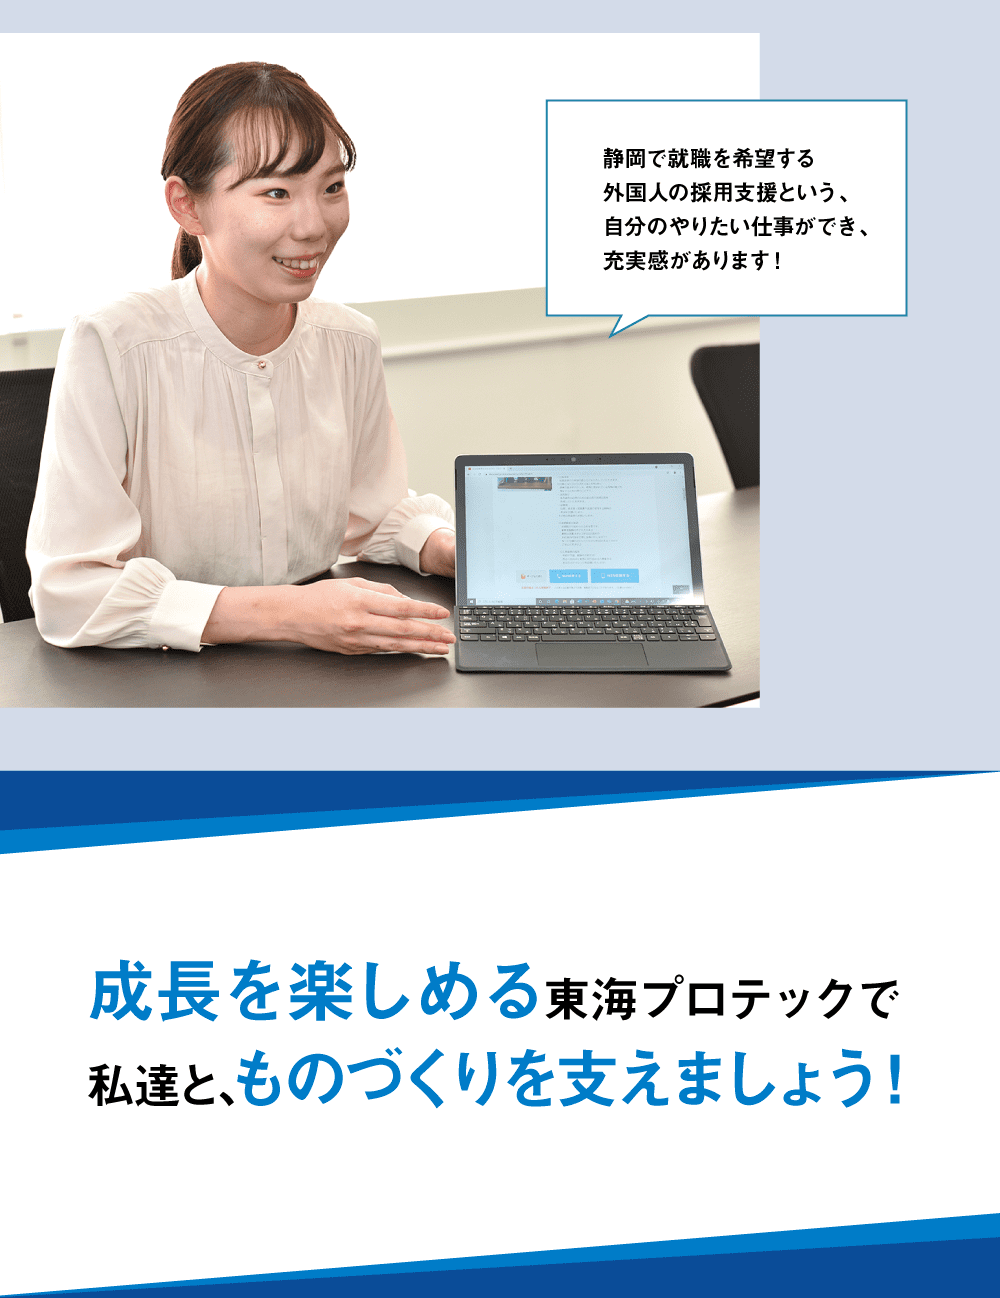 静岡で就職を希望する外国人の採用支援という、自分のやりたい仕事ができ、充実感があります！成長を楽しめる東海プロテックで私達と､ものづくりを支えましょう！